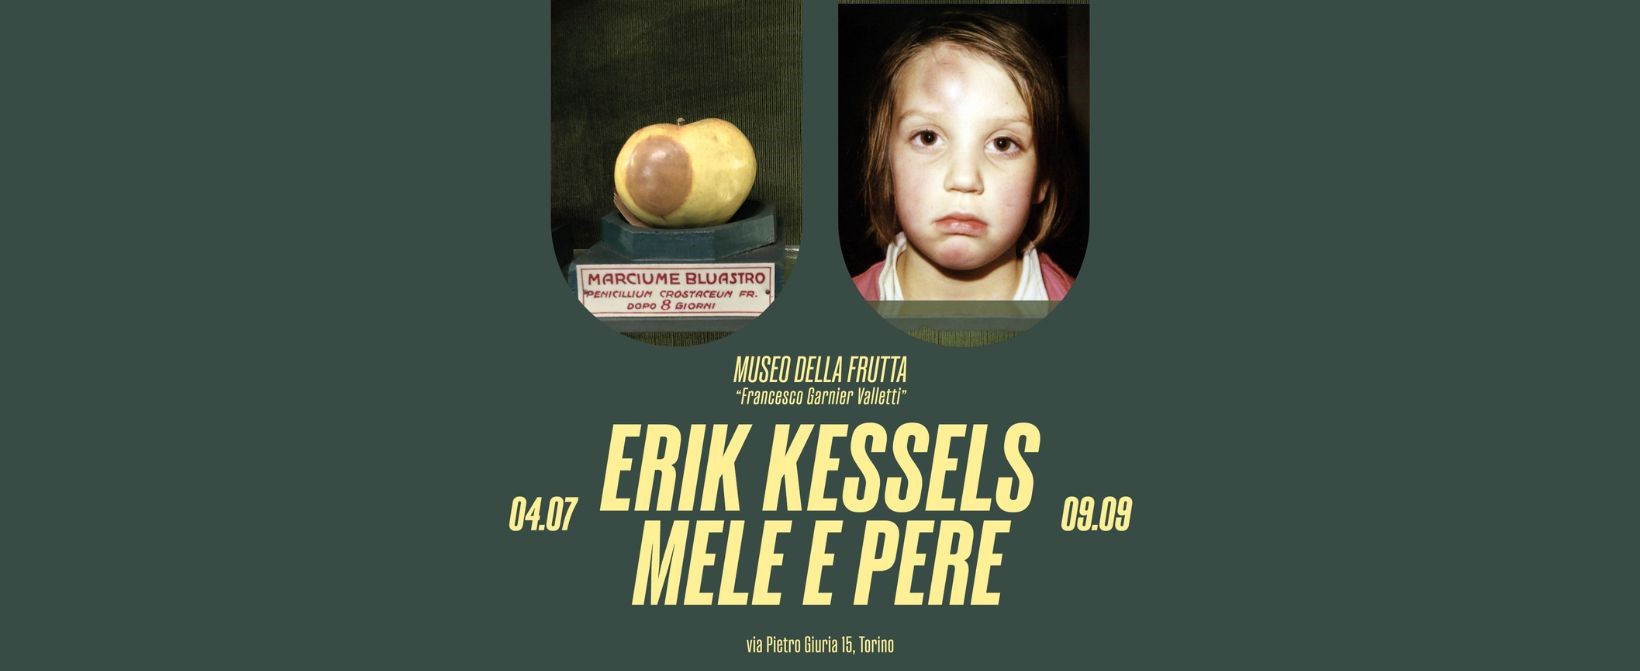 Erik Kessels MELE e PERE